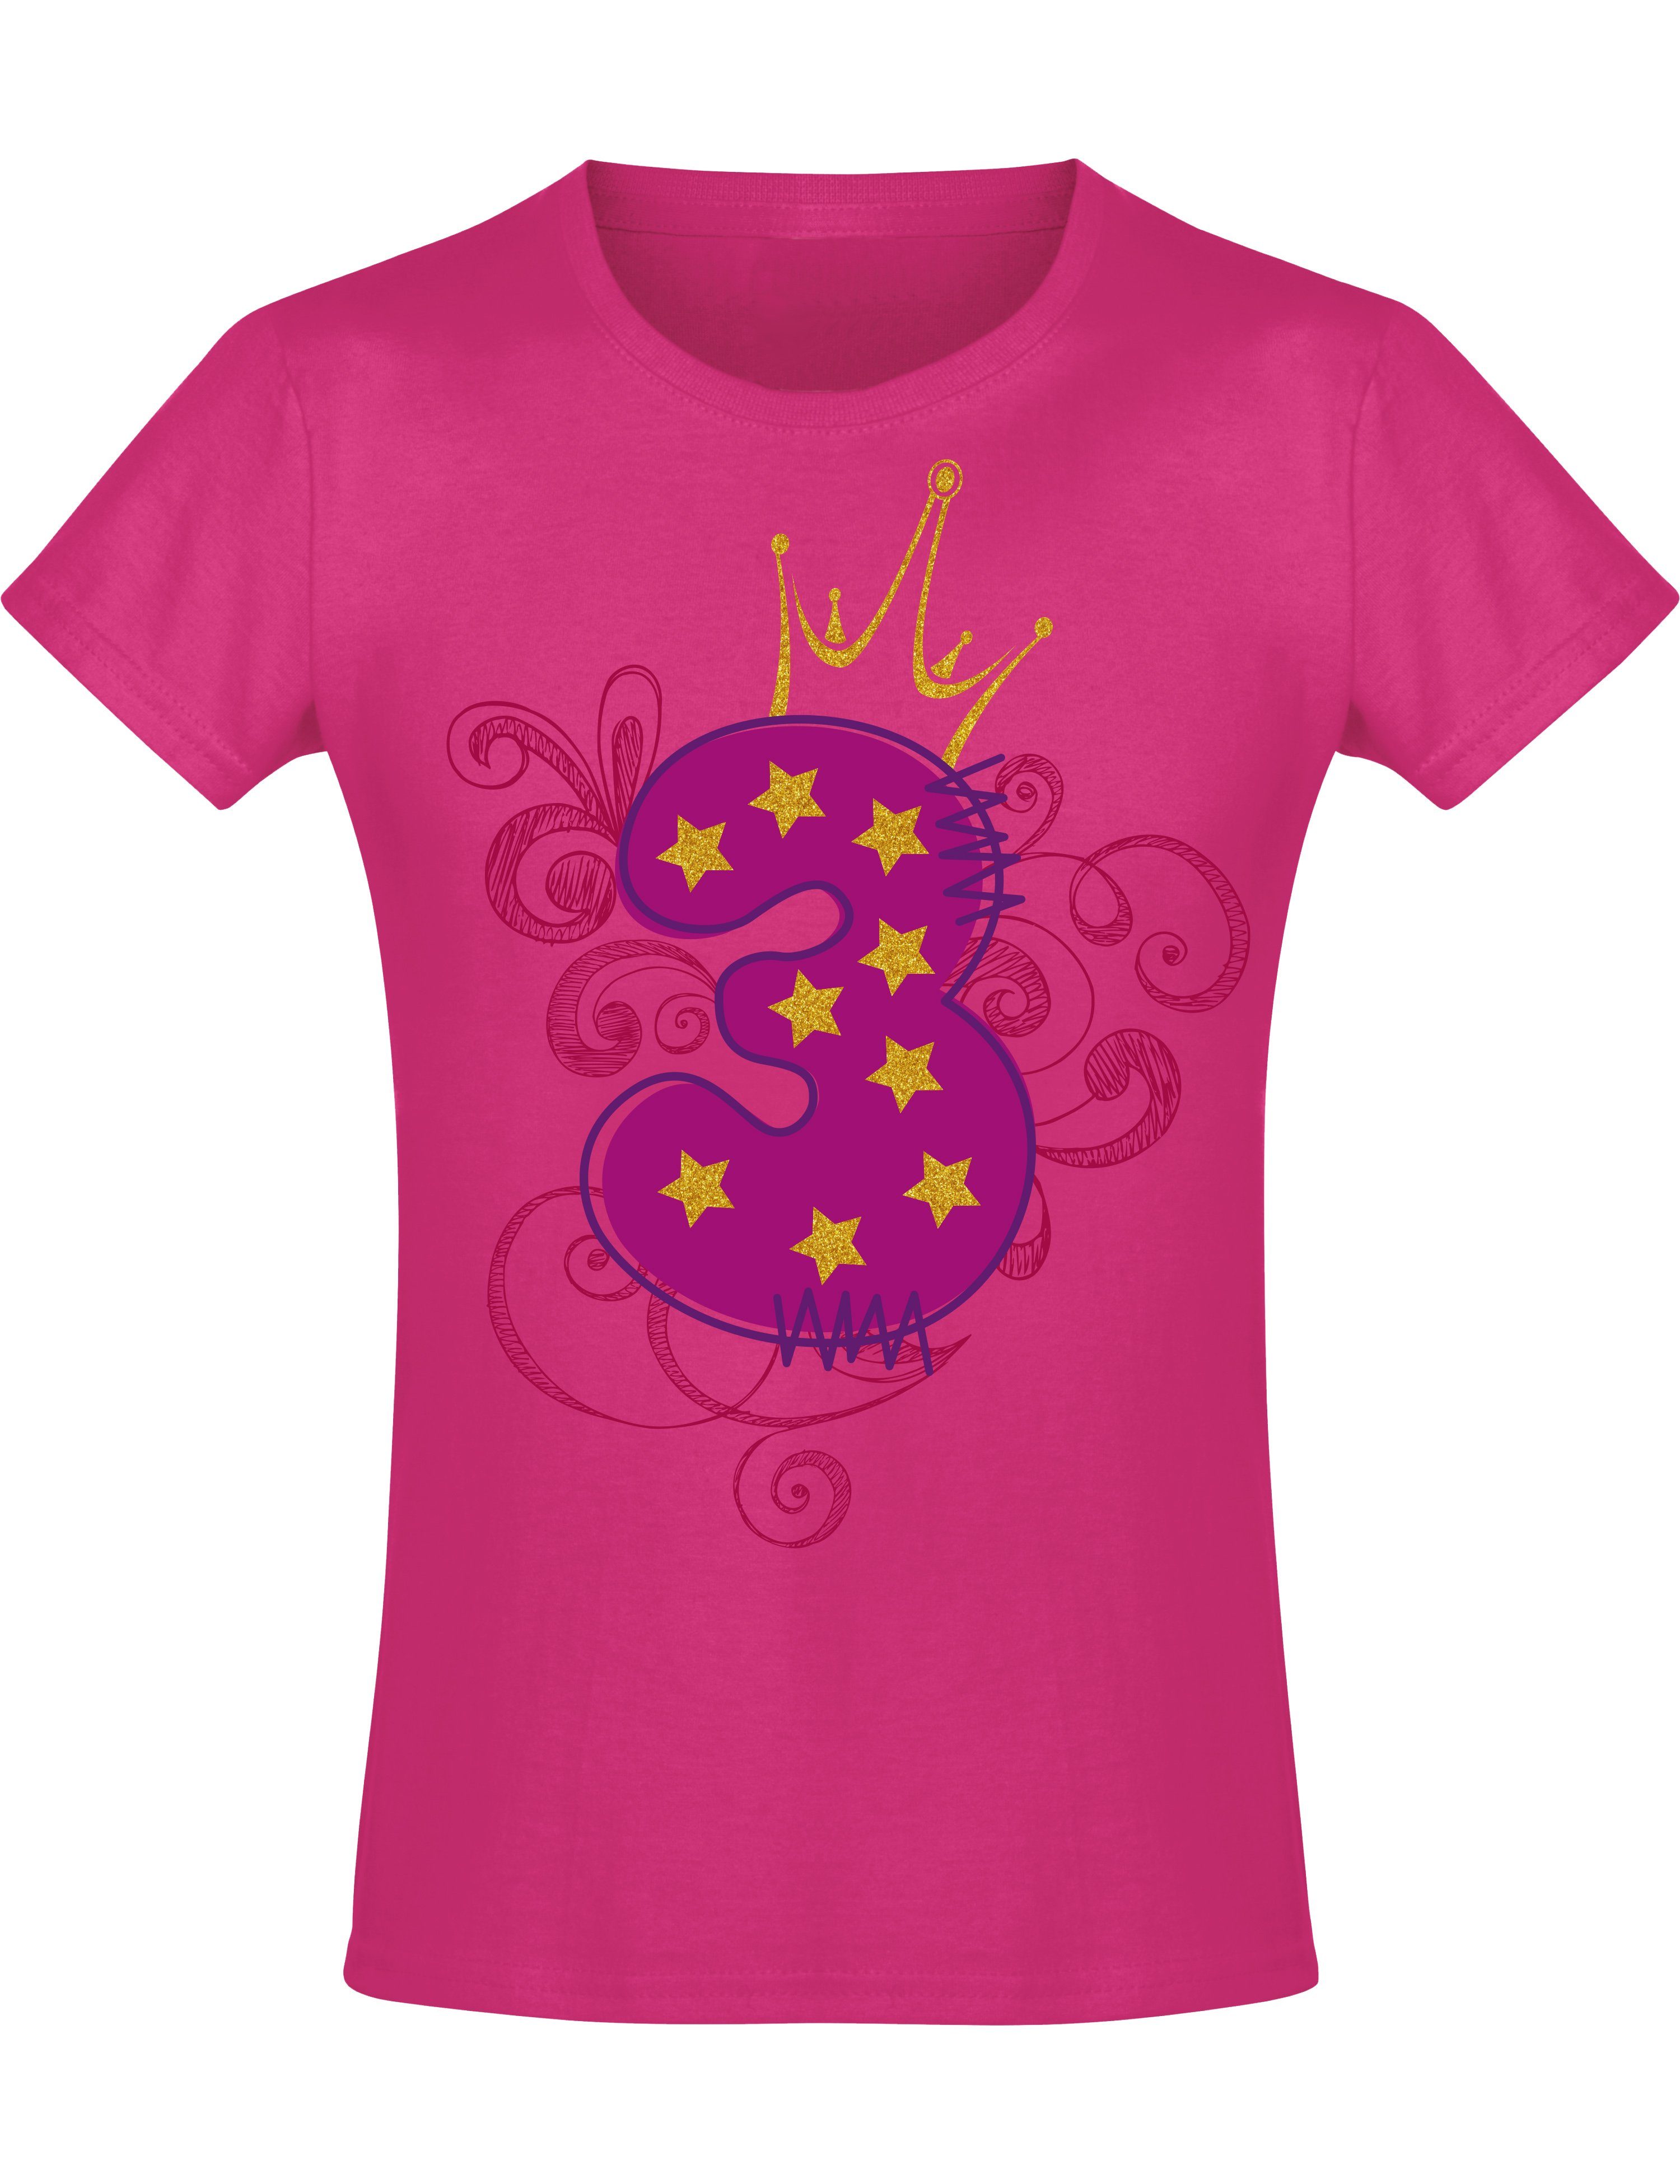 Baddery Print-Shirt Geburstagsgeschenk für Mädchen : 3 Jahre mit Krone, hochwertiger Siebdruck, aus Baumwolle